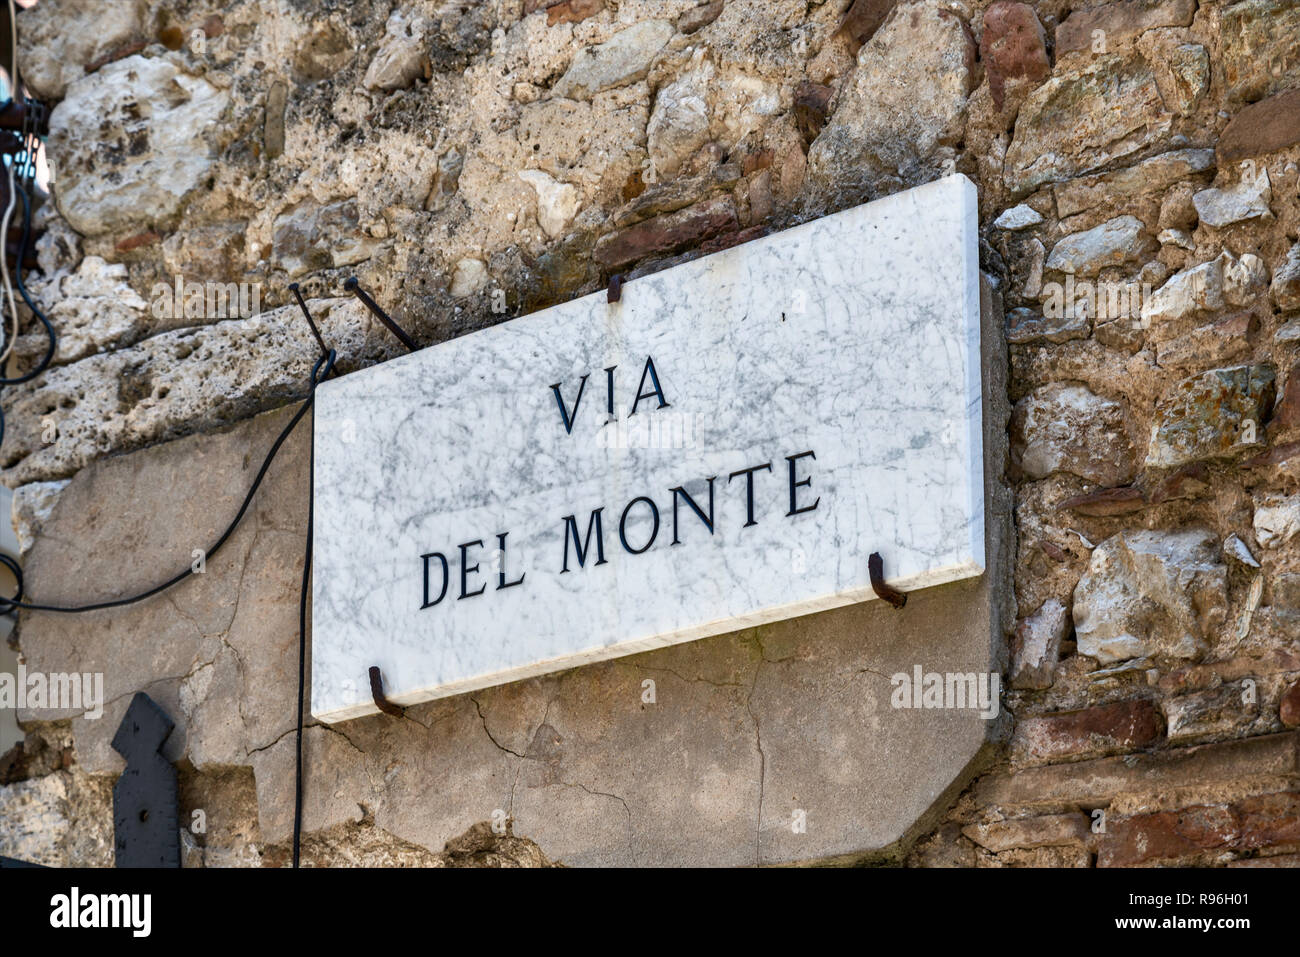 Firmar en nombre de la calle a través del Monte, en el centro histórico de Narni, Umbría. Foto de stock